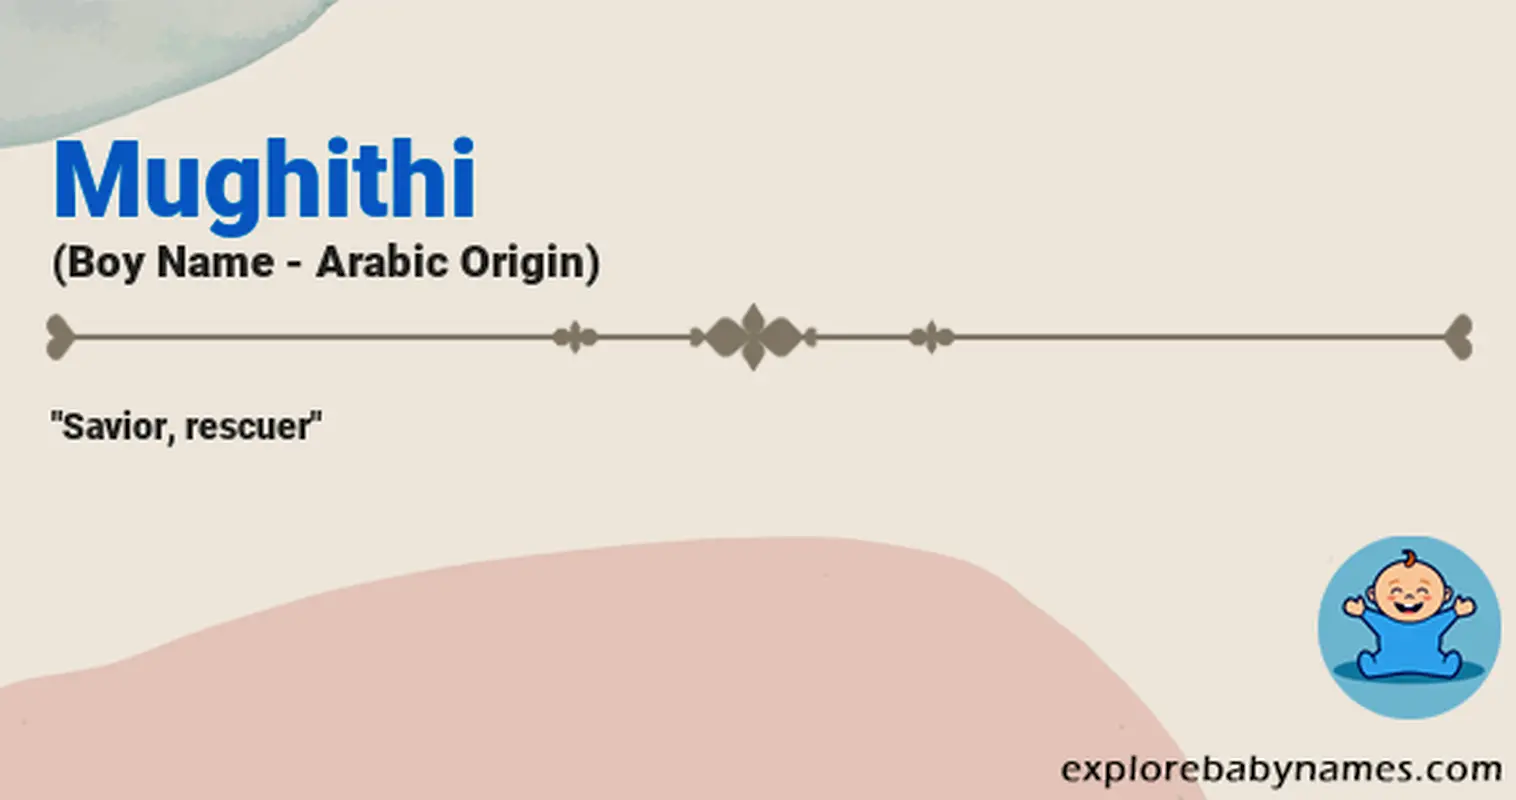 Meaning of Mughithi